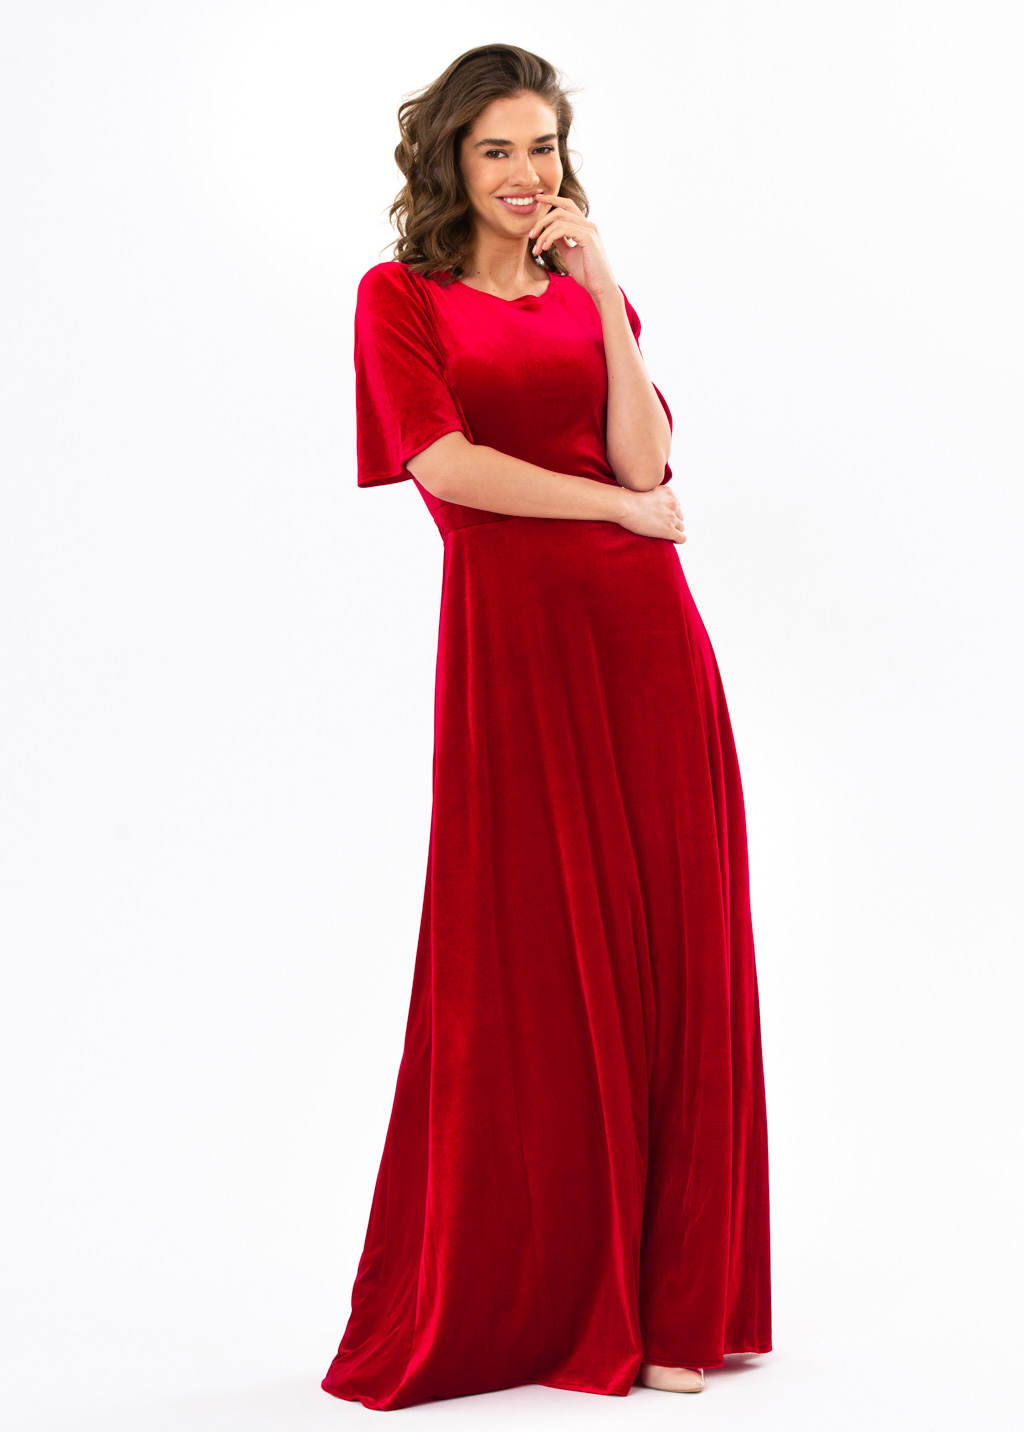 Red velvet long dress